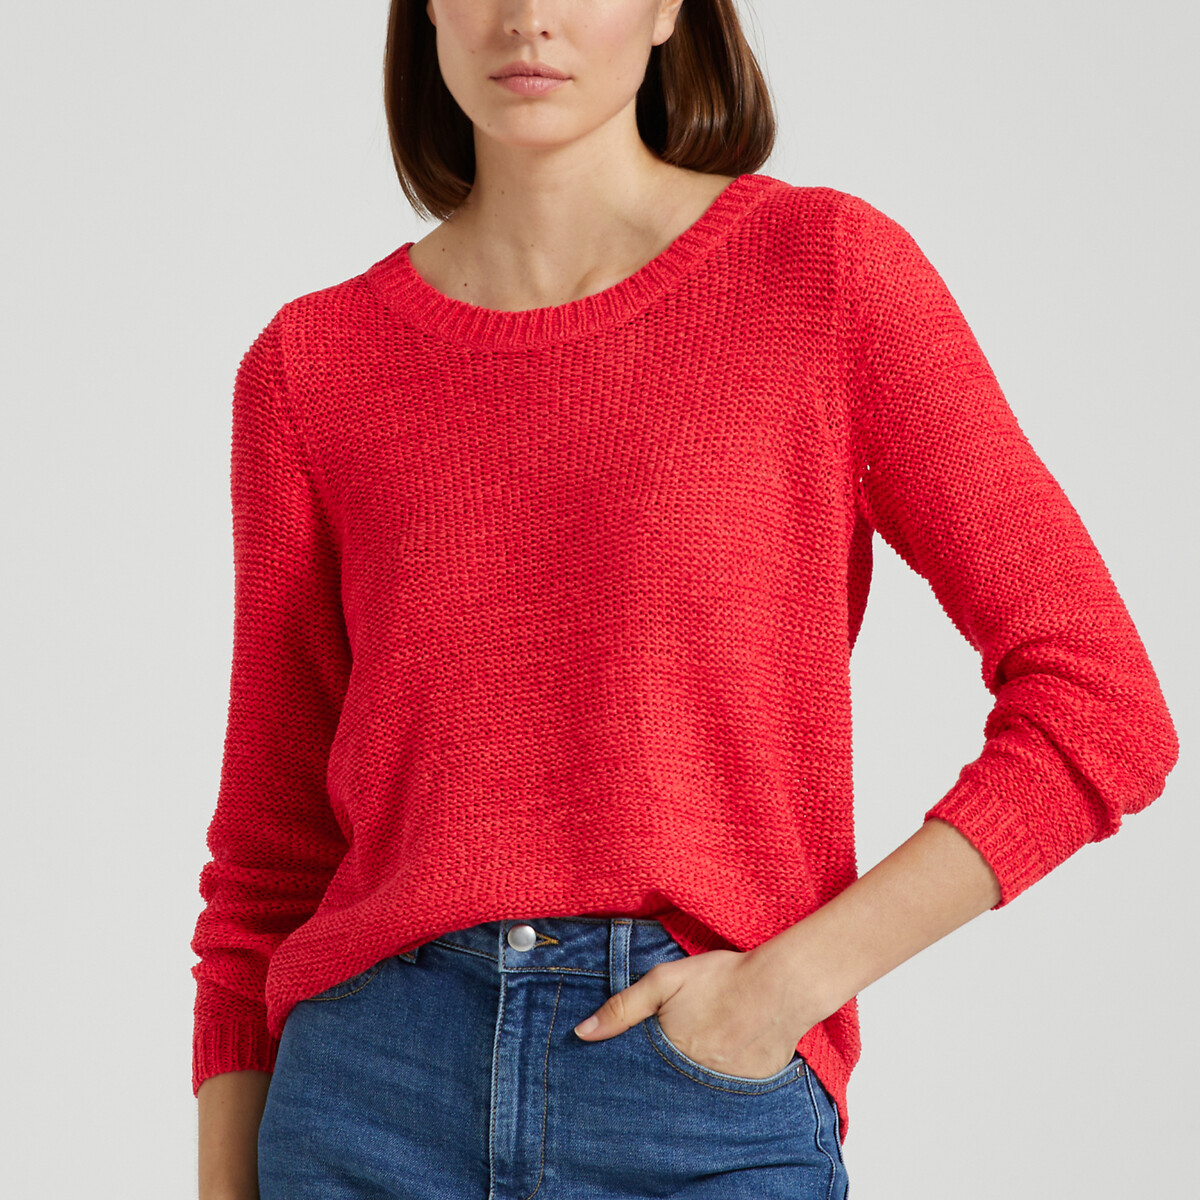 Пуловер с вырезом-лодочкой из тонкого трикотажа S красный пуловер с вырезом лодочкой из тонкого трикотажа l красный